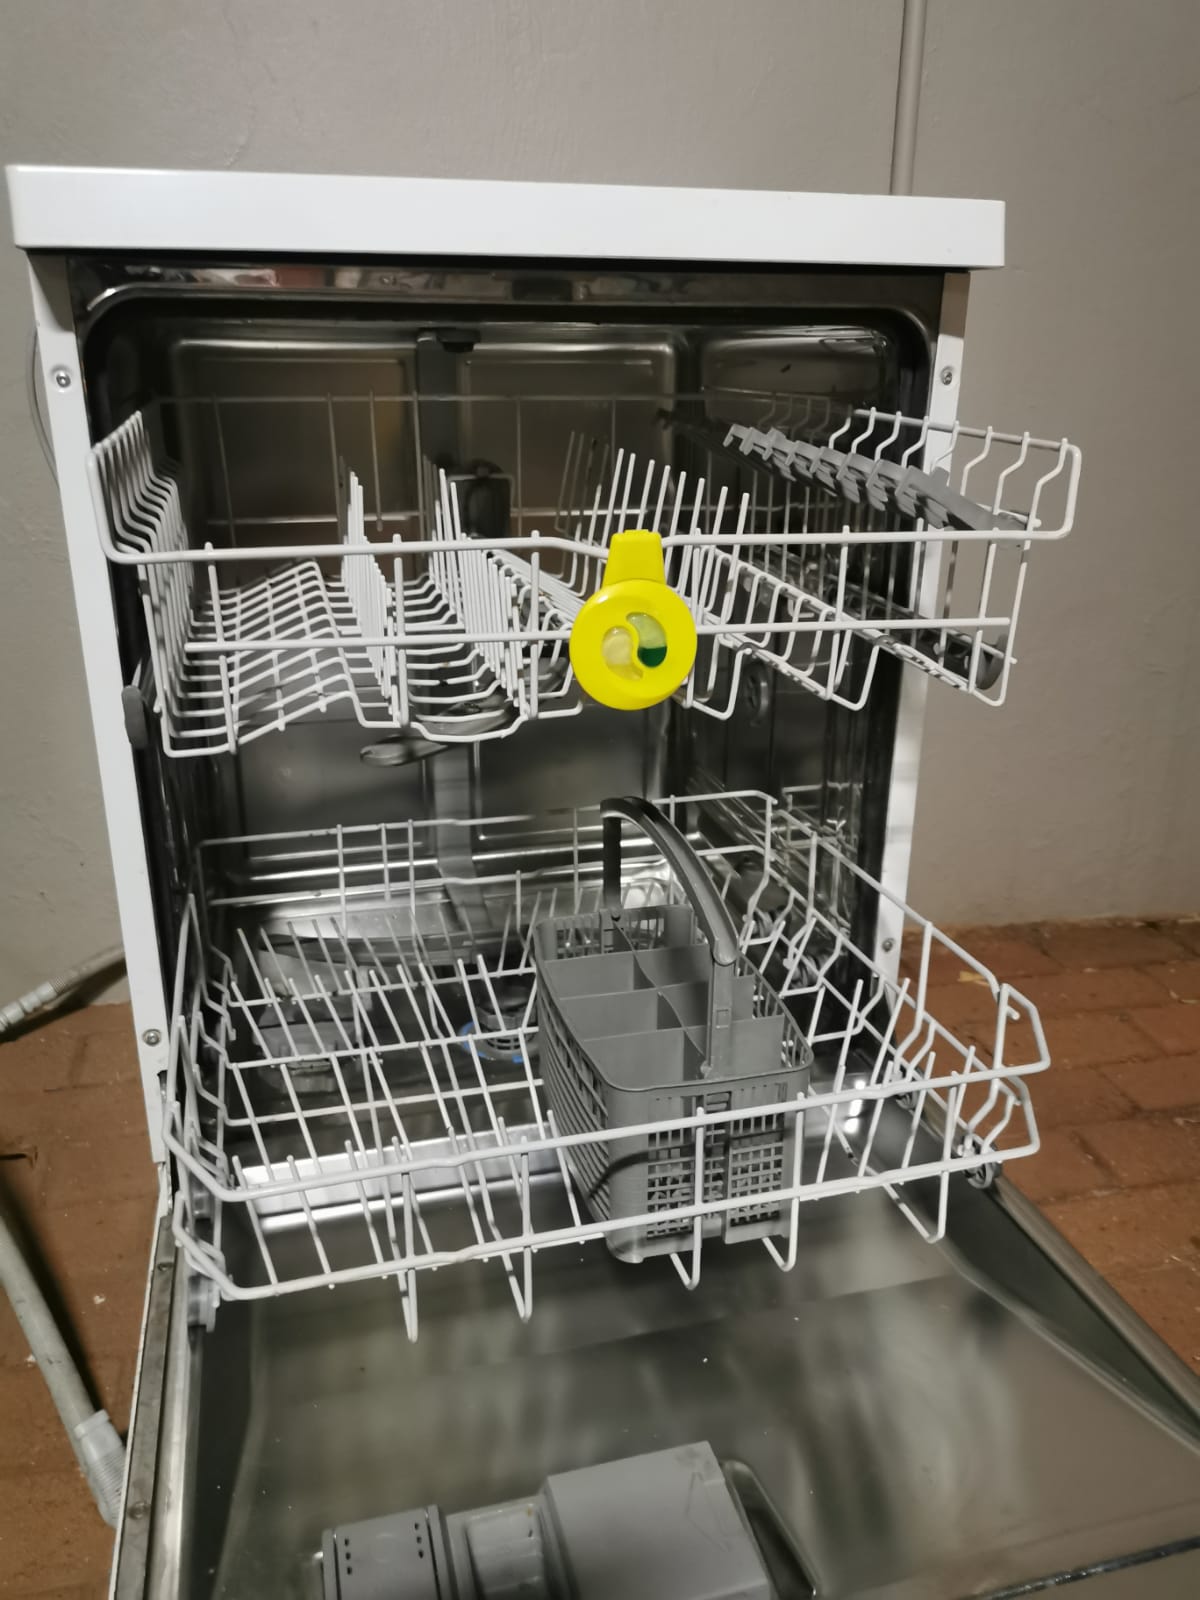 Broken Bosch Dishwasher